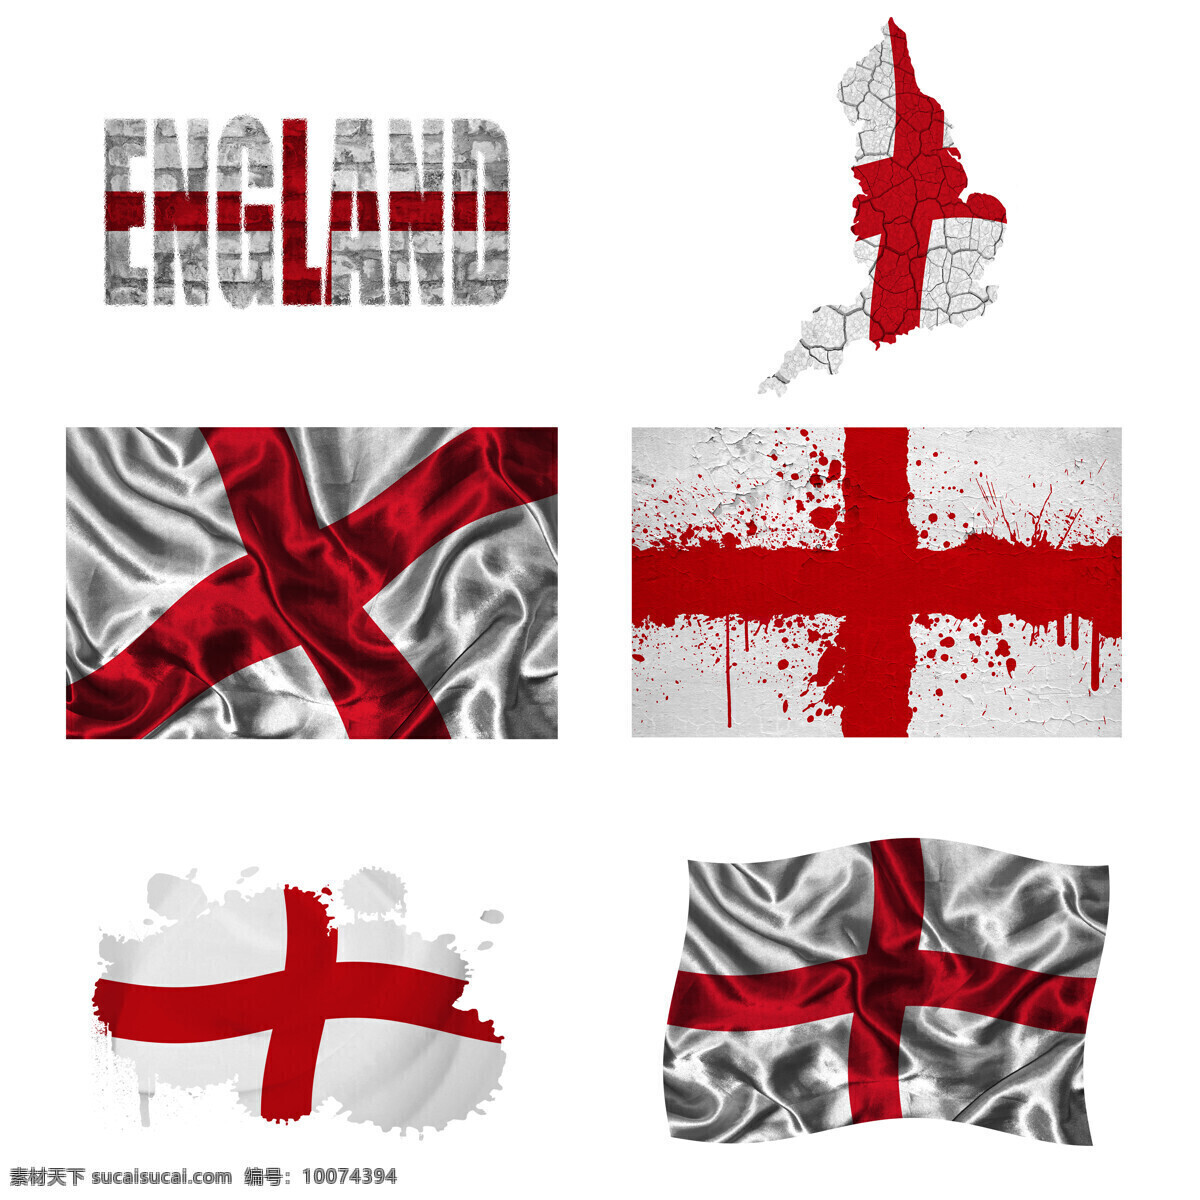 英格兰 地图 国旗 英格兰国旗 旗帜 国旗图案 其他类别 国旗图片 生活百科